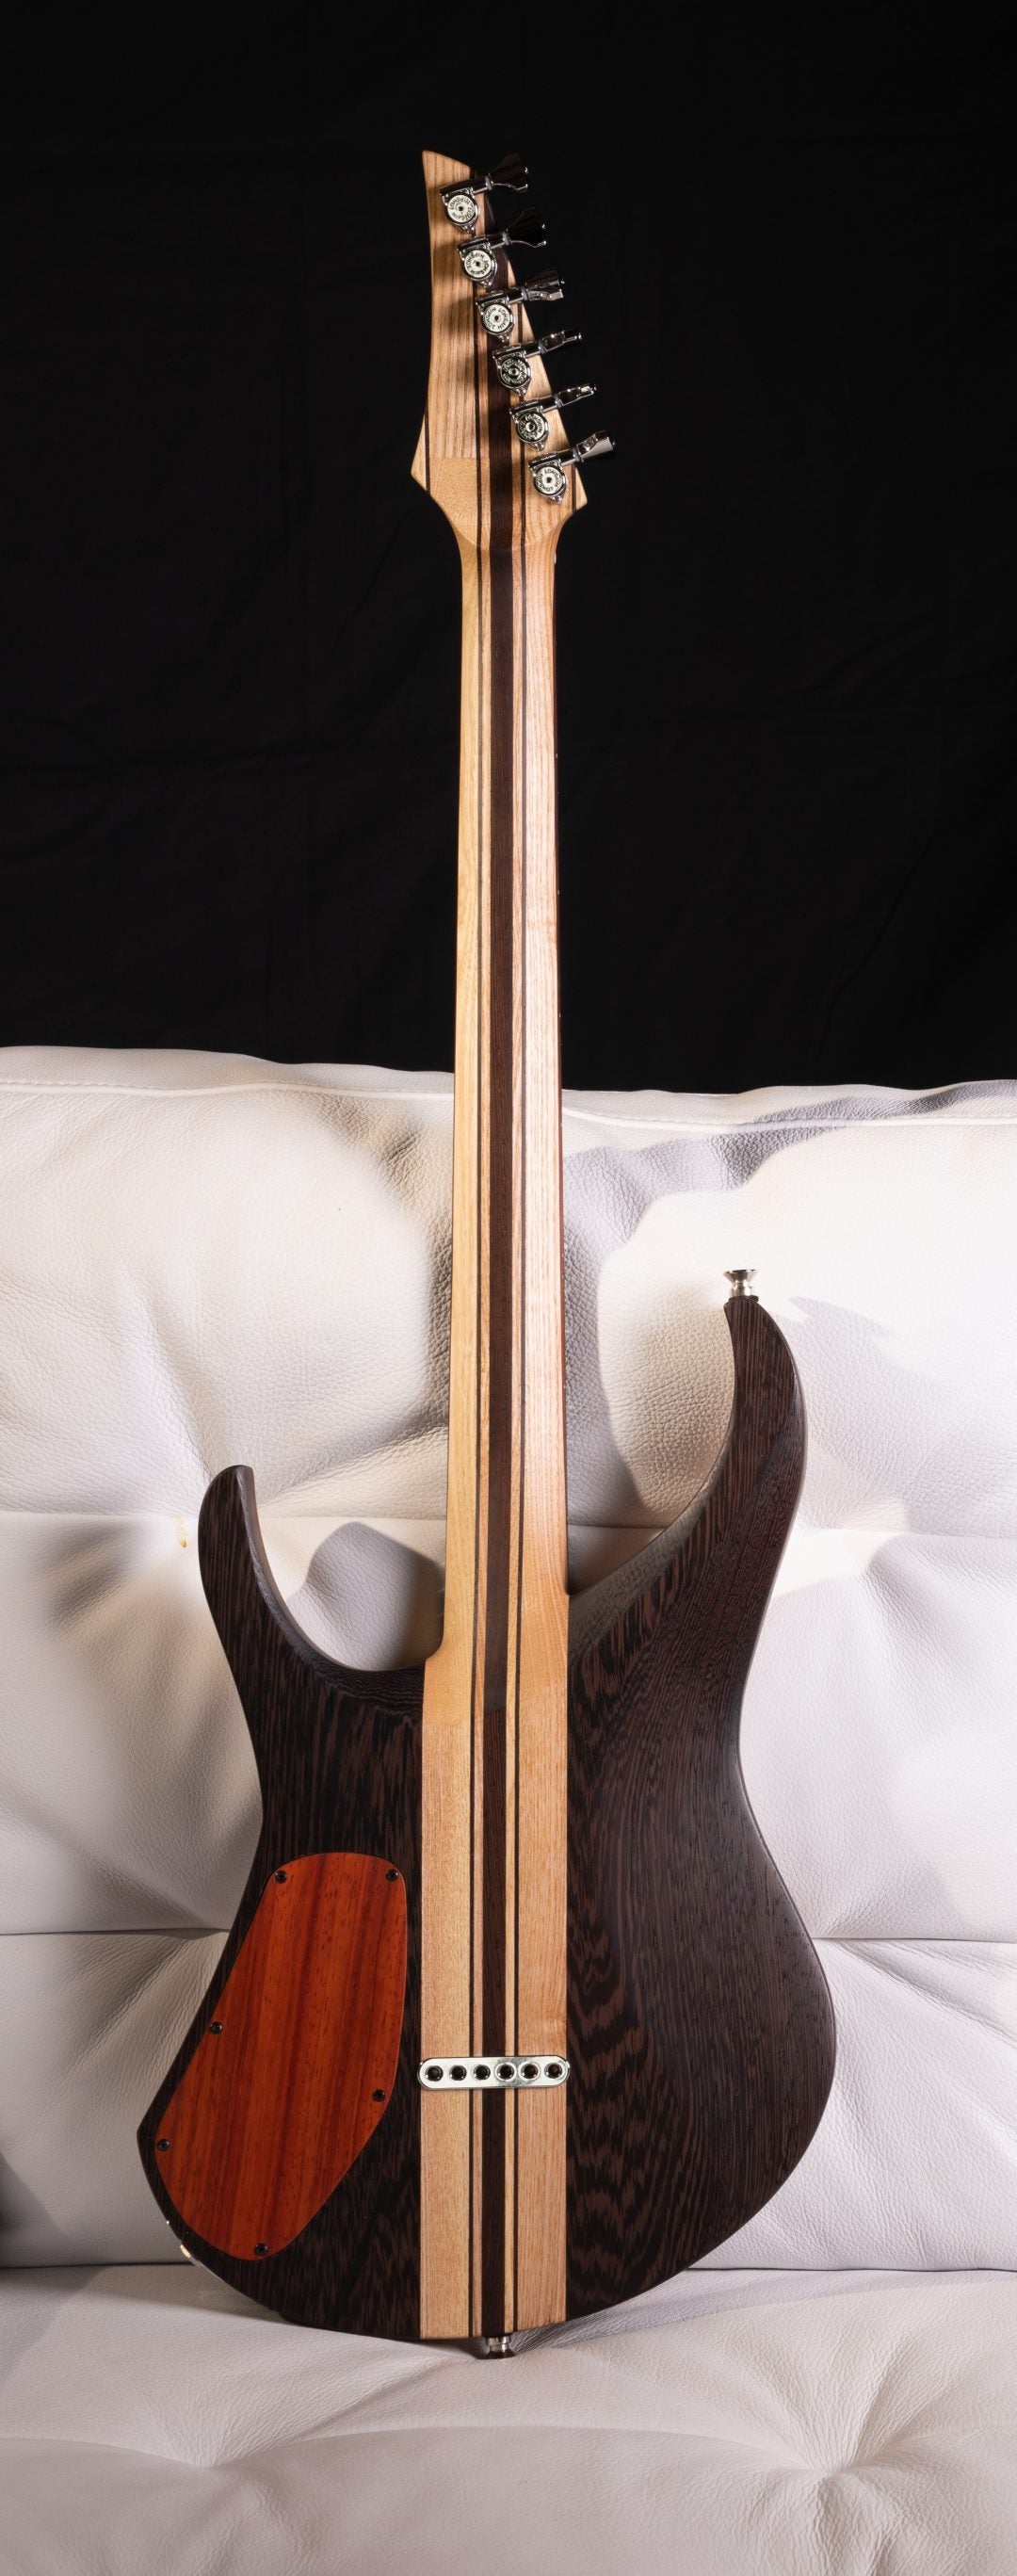 MS6 FOWP de dos - Edition Limitées - Guitare à manche traversant de la marque de lutherie française De Leeuw Guitars. Guitare Made in France - Guitar Made in France